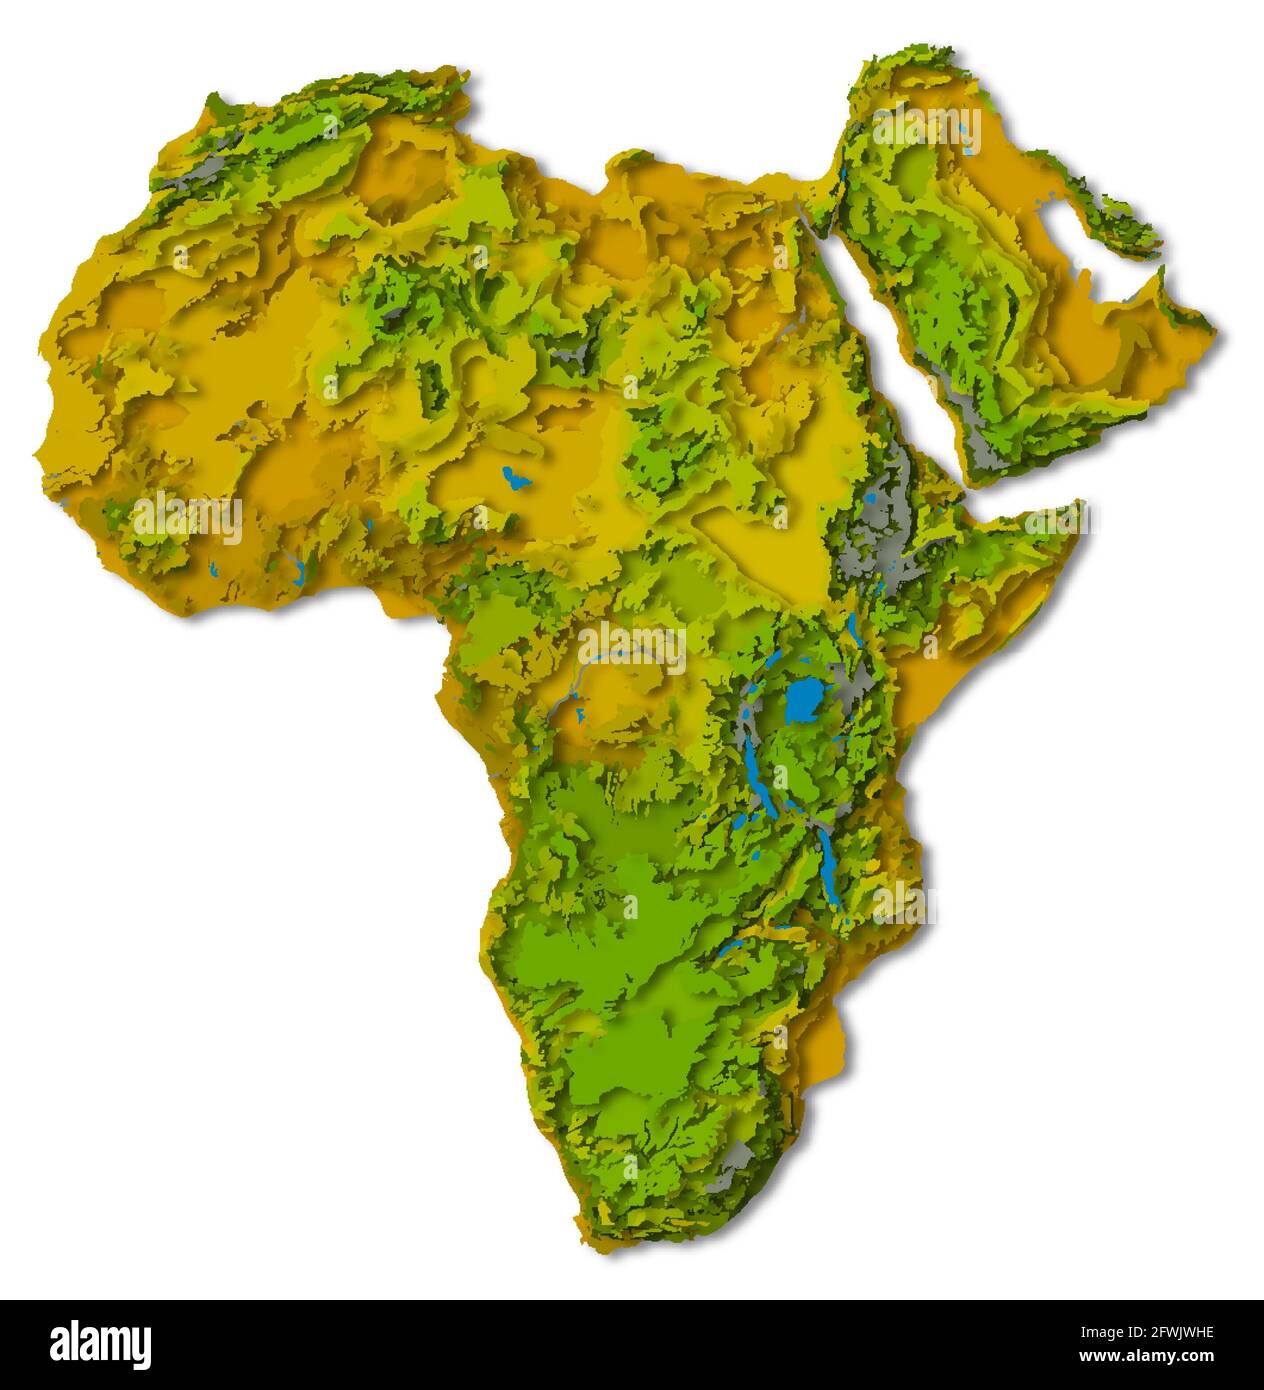 Afrika-Kontinent, detailreiche, papiergeschnittene Karte mit Schatten, isoliert auf weißem Hintergrund. Elemente dieses Bildes, die von der NASA eingerichtet wurden. Stockfoto